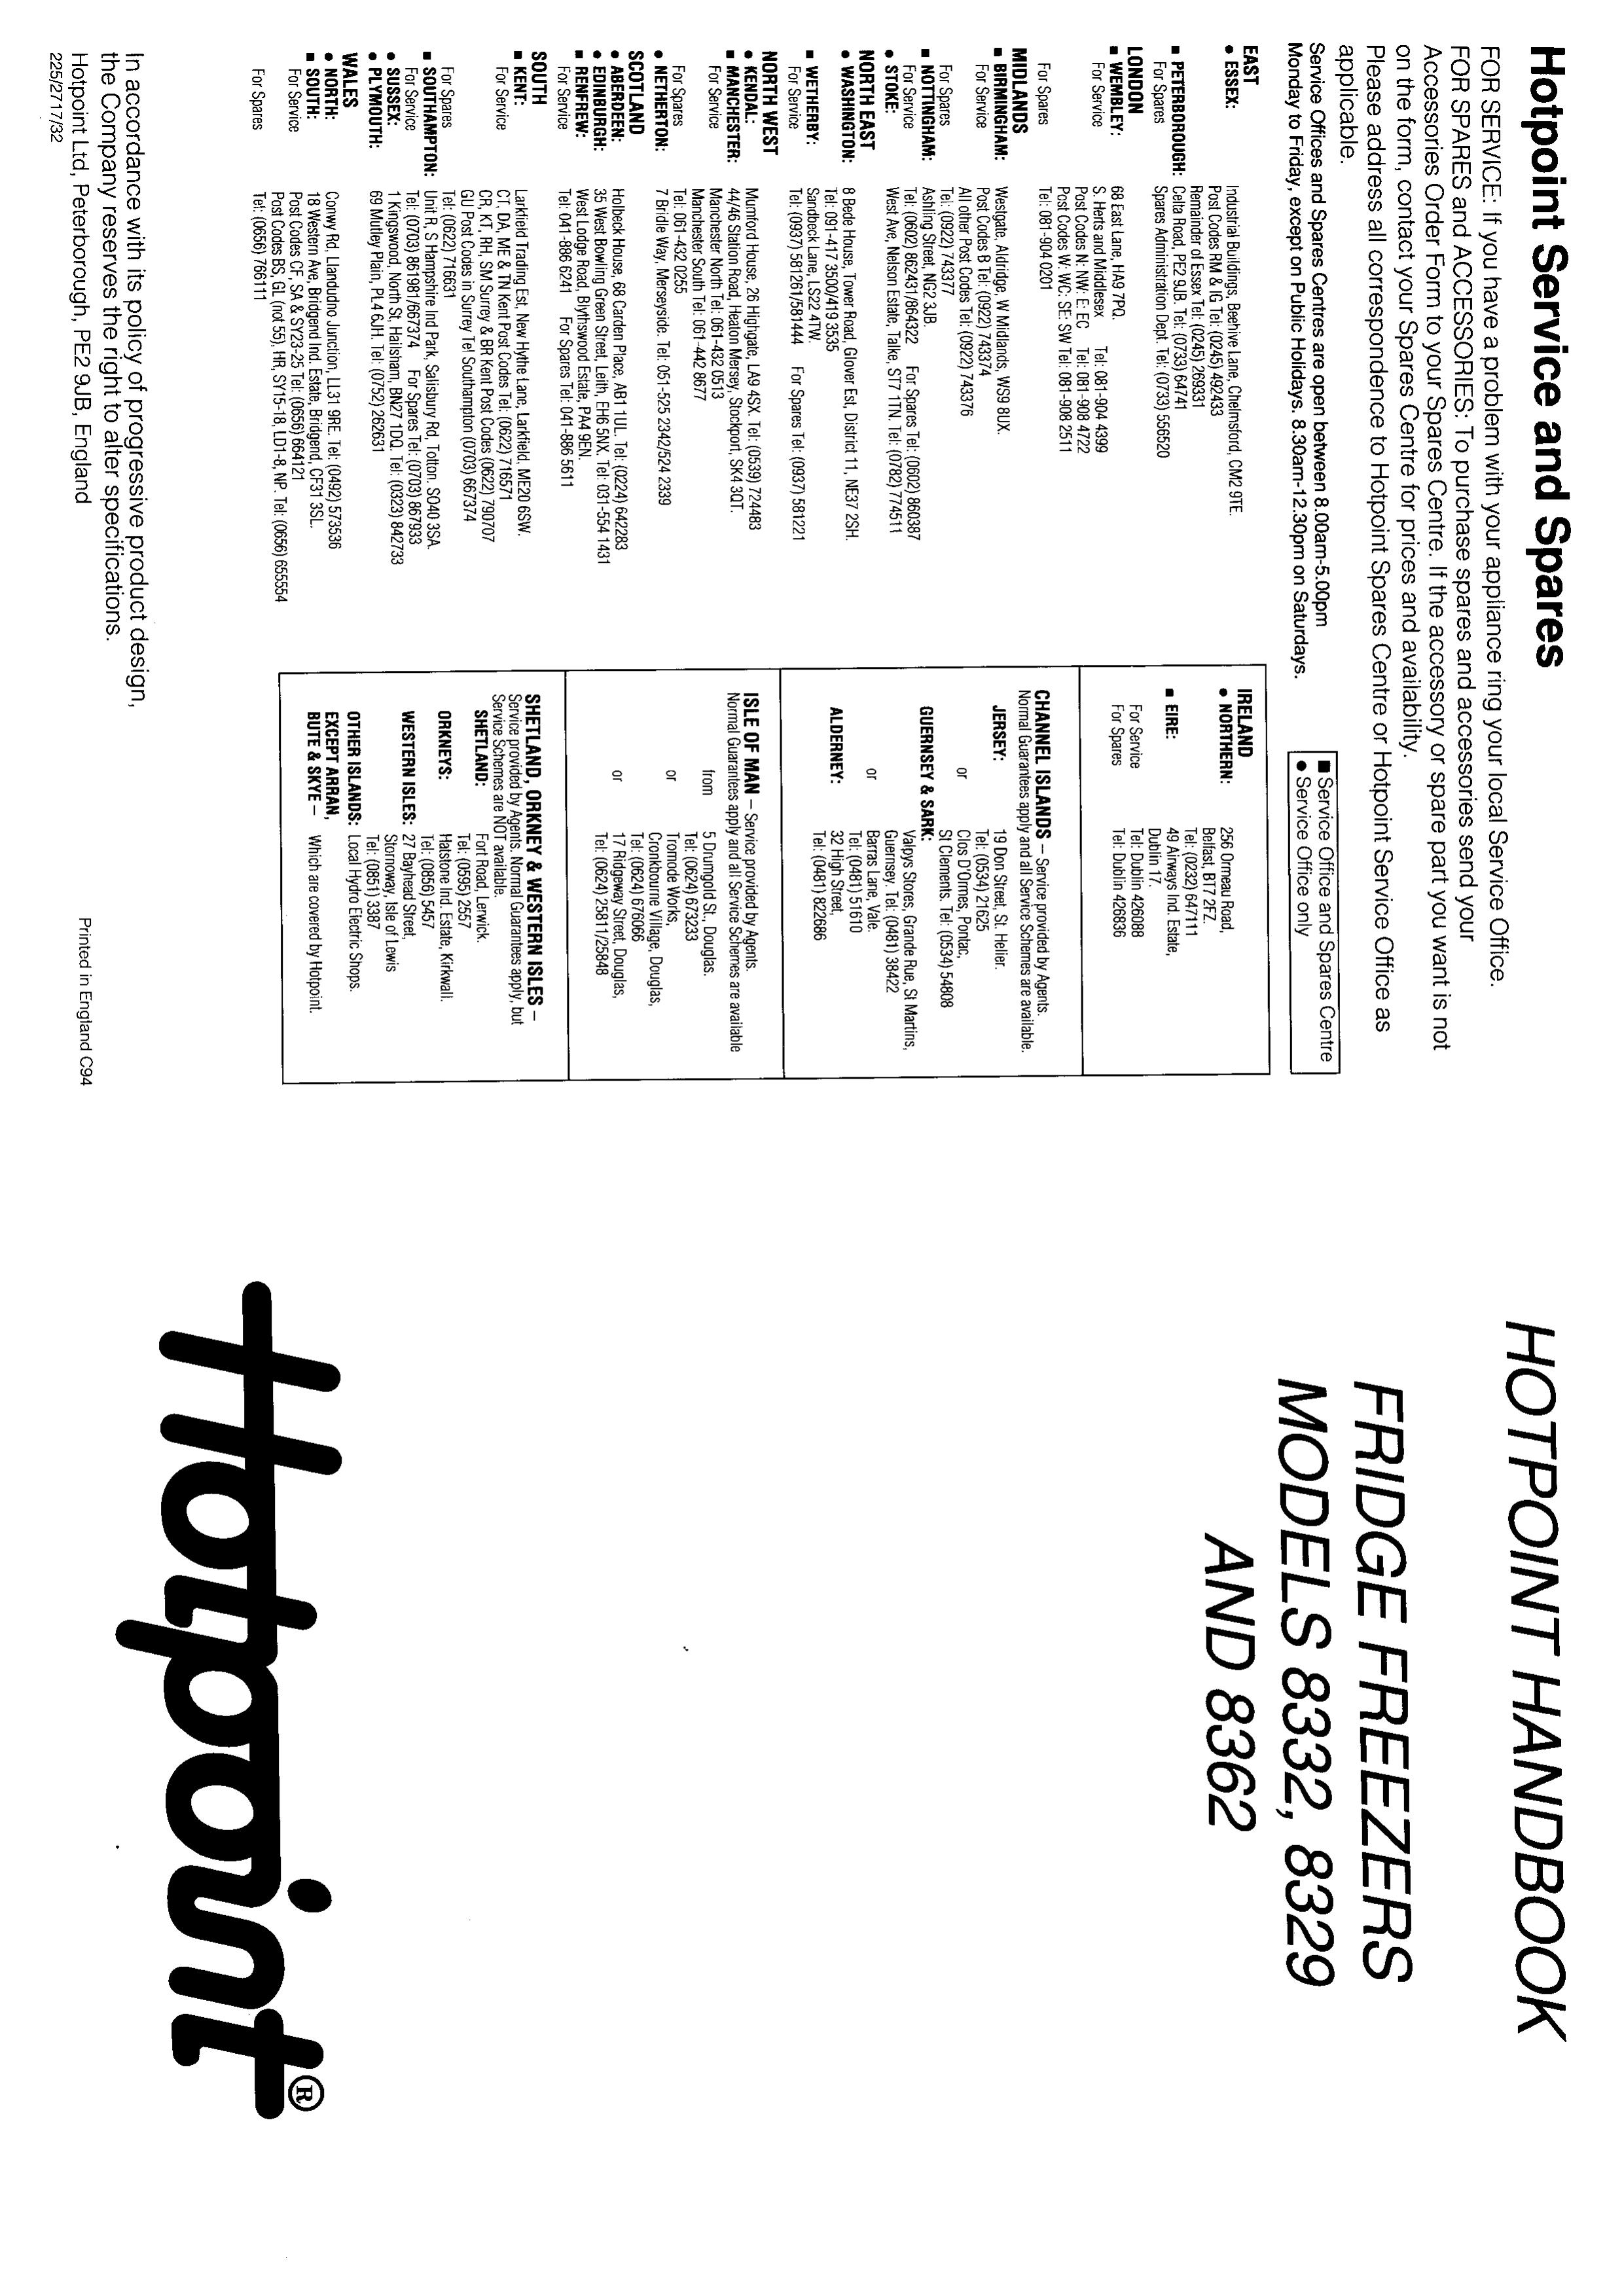 Hotpoint 8362 Refrigerator User Manual